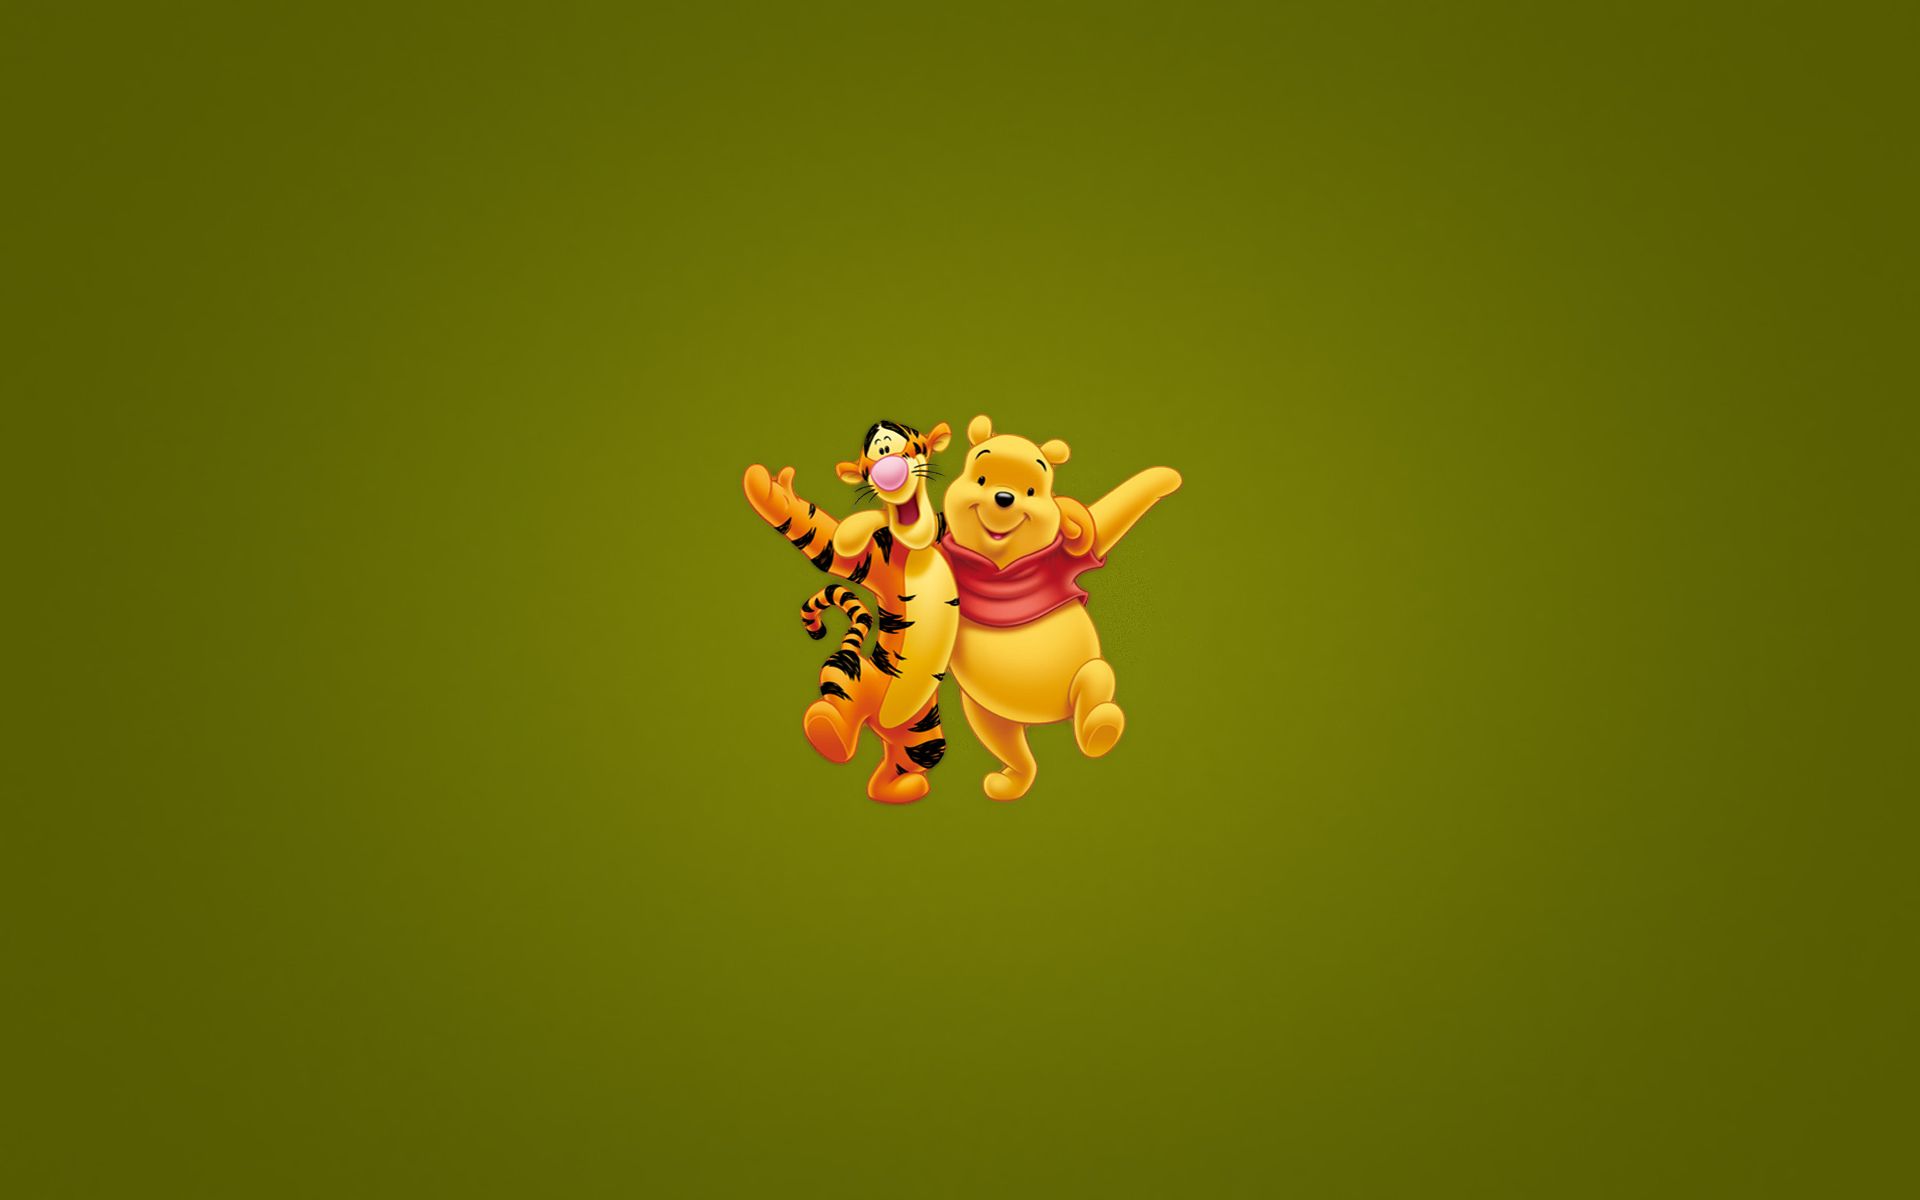 HD wallpaper, Pooh, The, Winnie